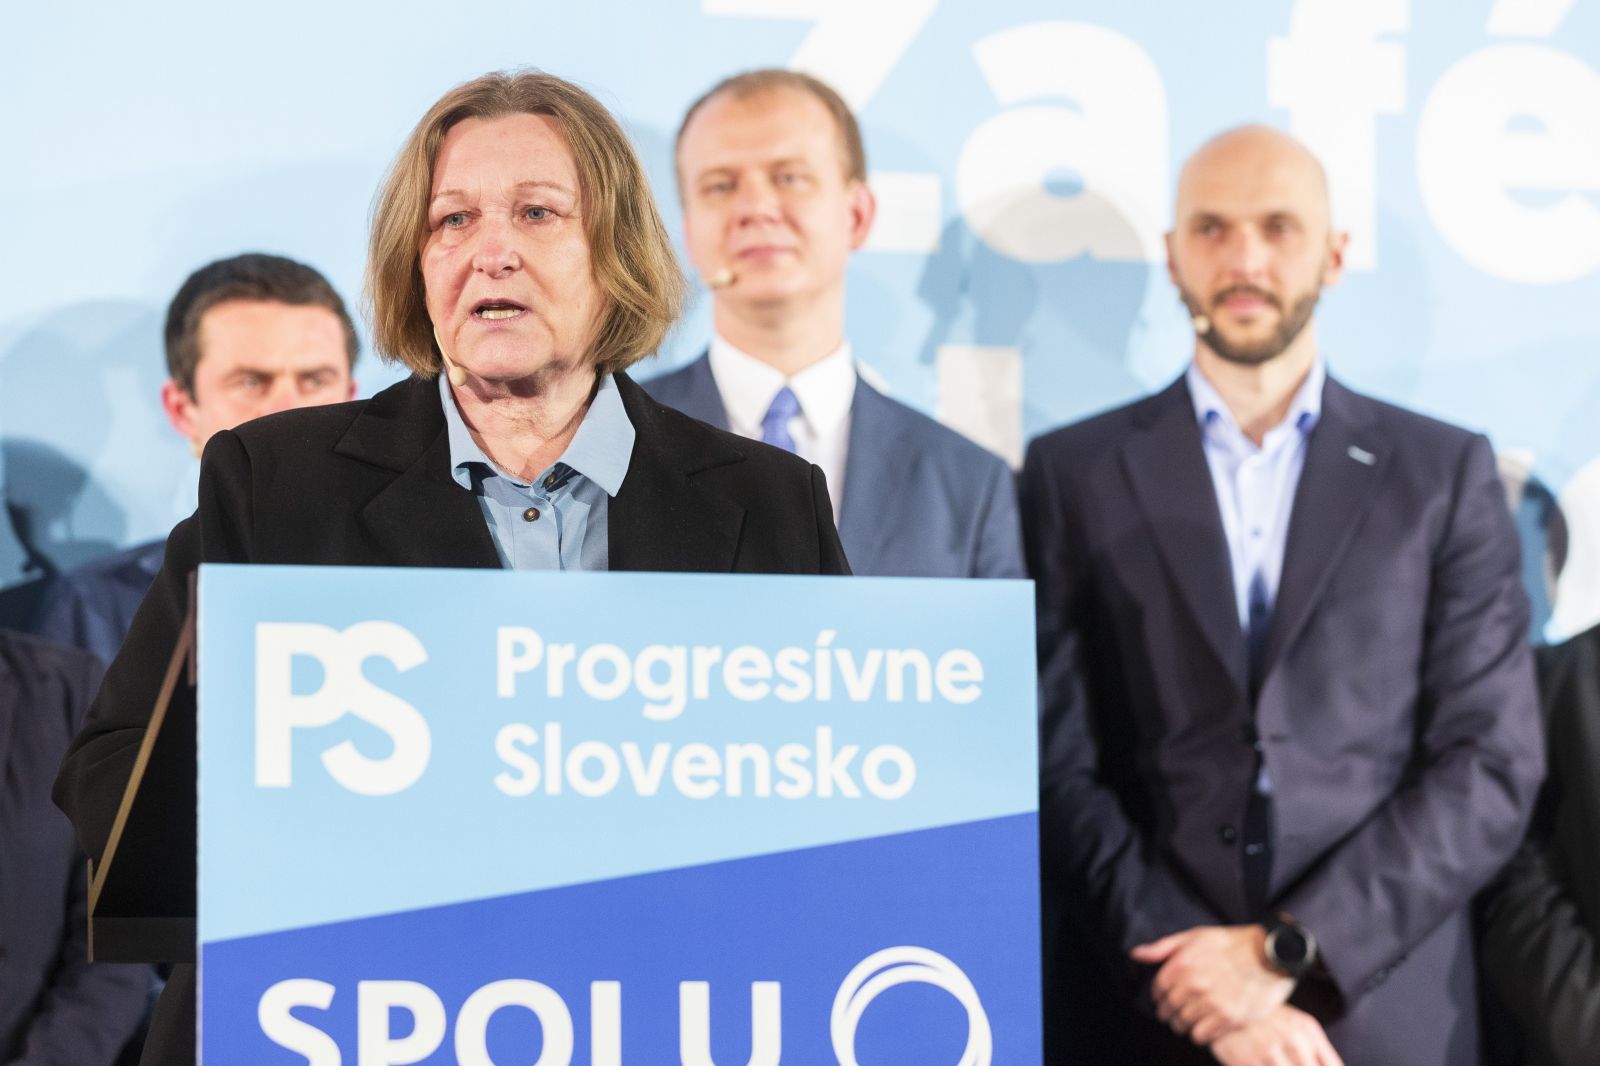 Z akých miest kandidujú do volieb Igor Matovič, Robert Fico alebo odsúdený extrémista Mazurek a prečo nie sú prví?